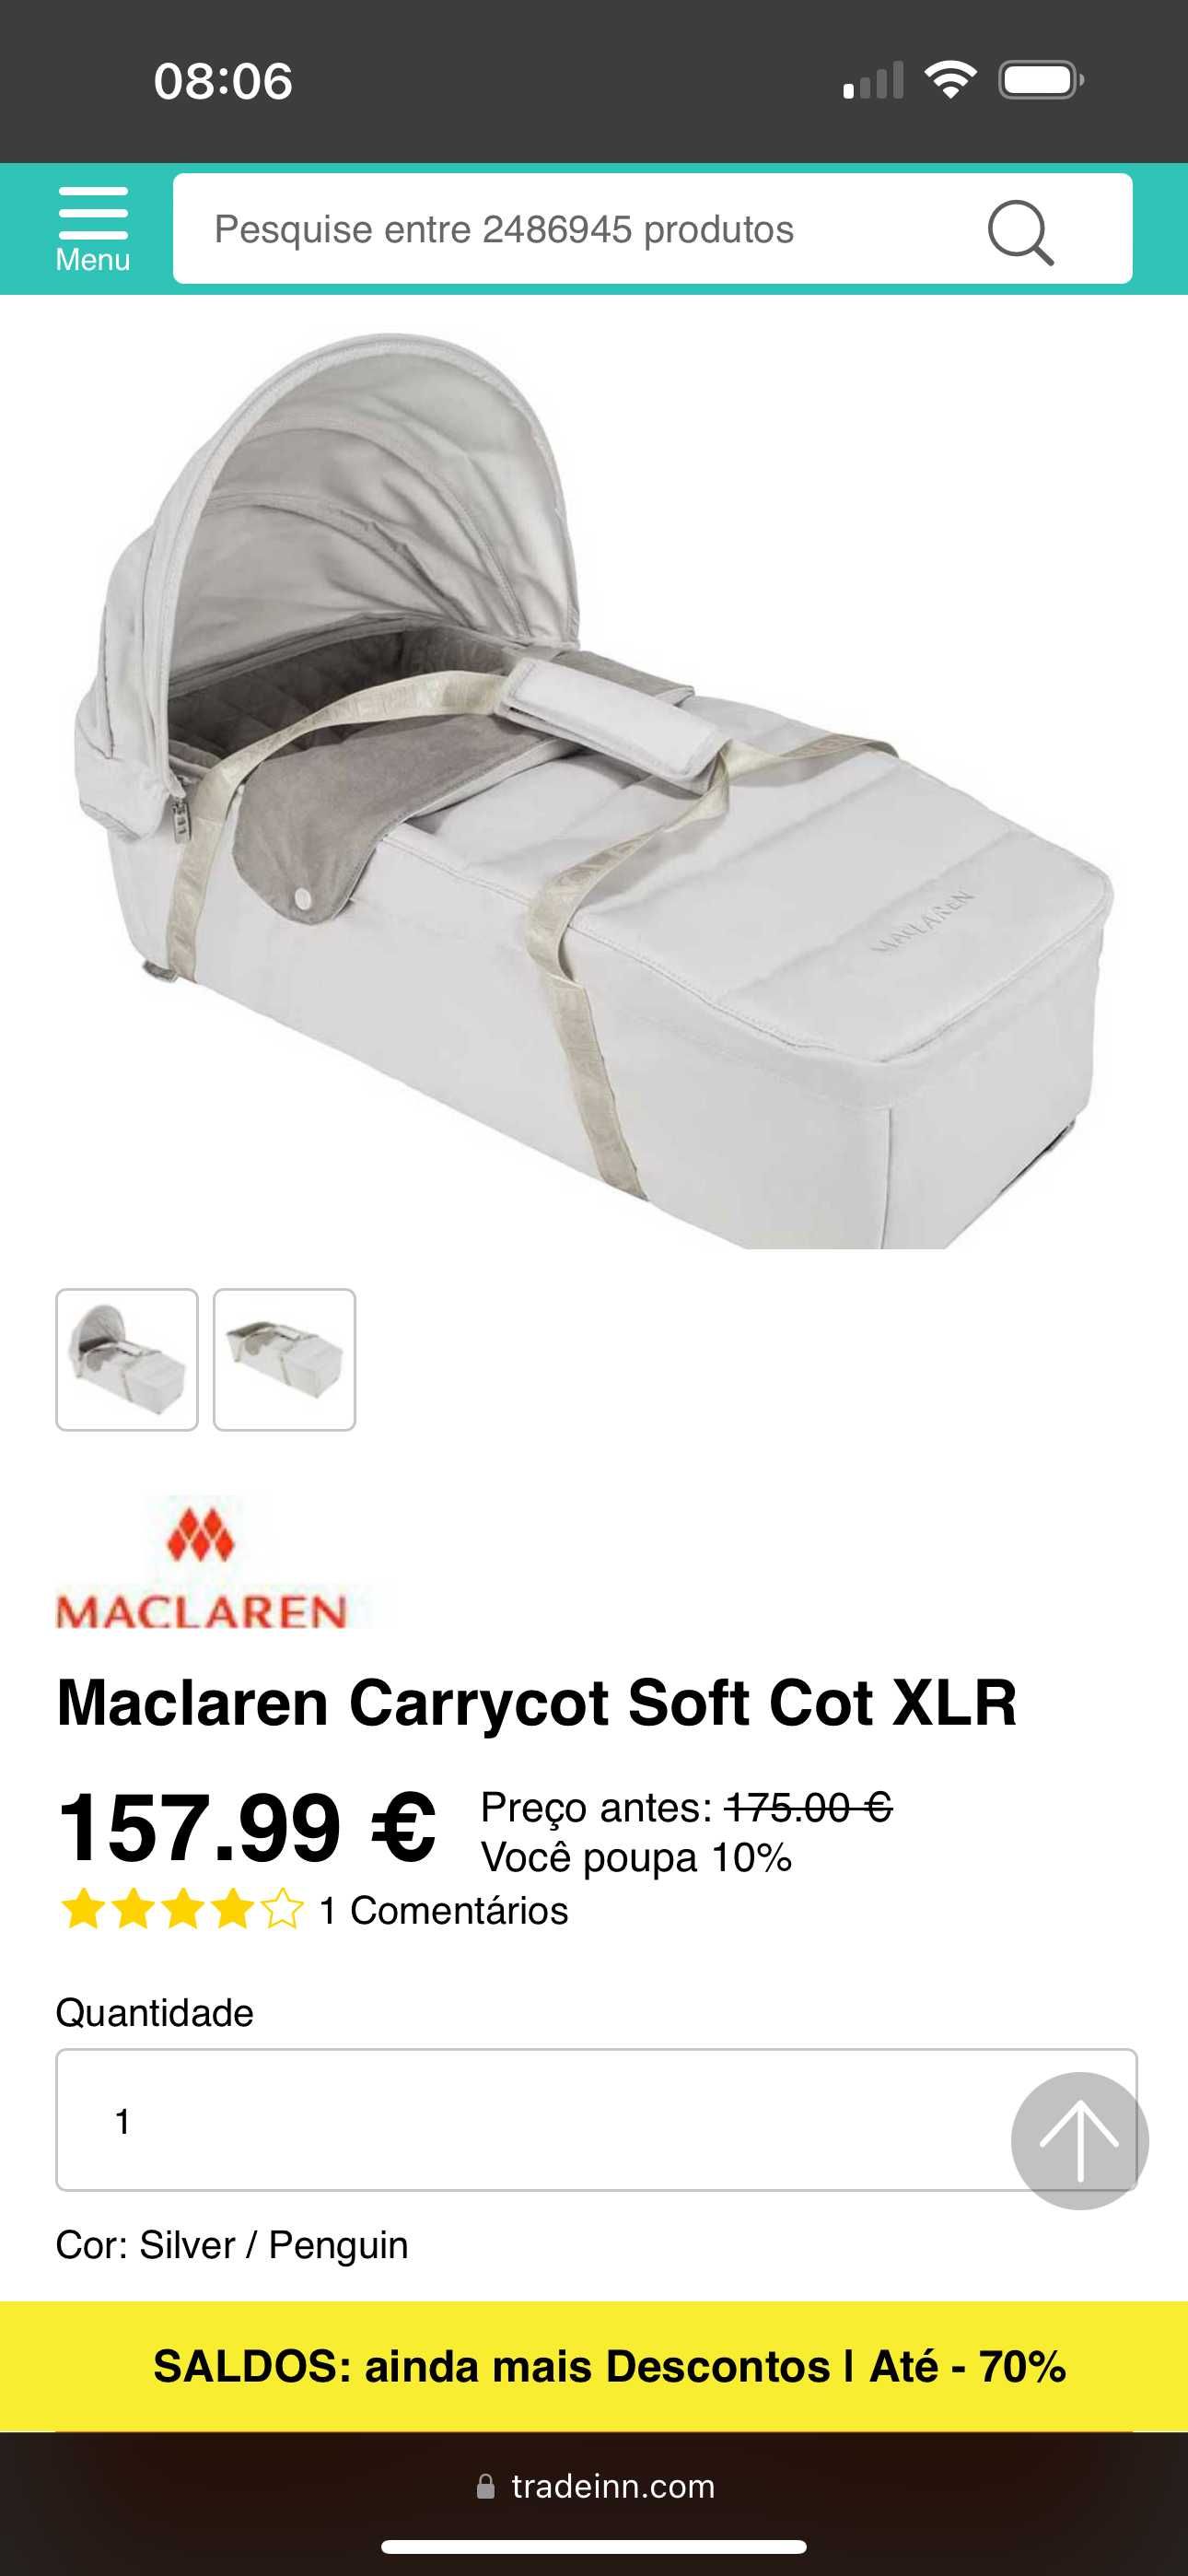 MACLAREN Carrycot Soft Cot/ ALCOFA SOFT Vermelha NOVA na caixa